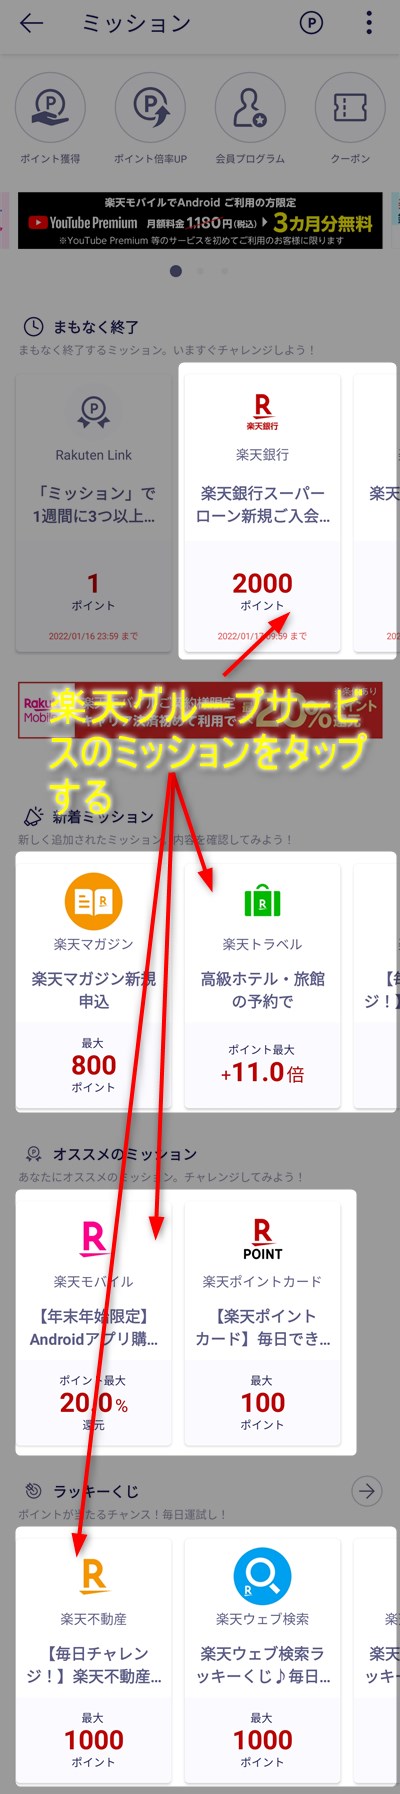 Rakuten Linkアプリ「ミッション」で1週間に3つ以上のキャンペーン情報を”チャレンジする”ボタンから確認するの達成方法